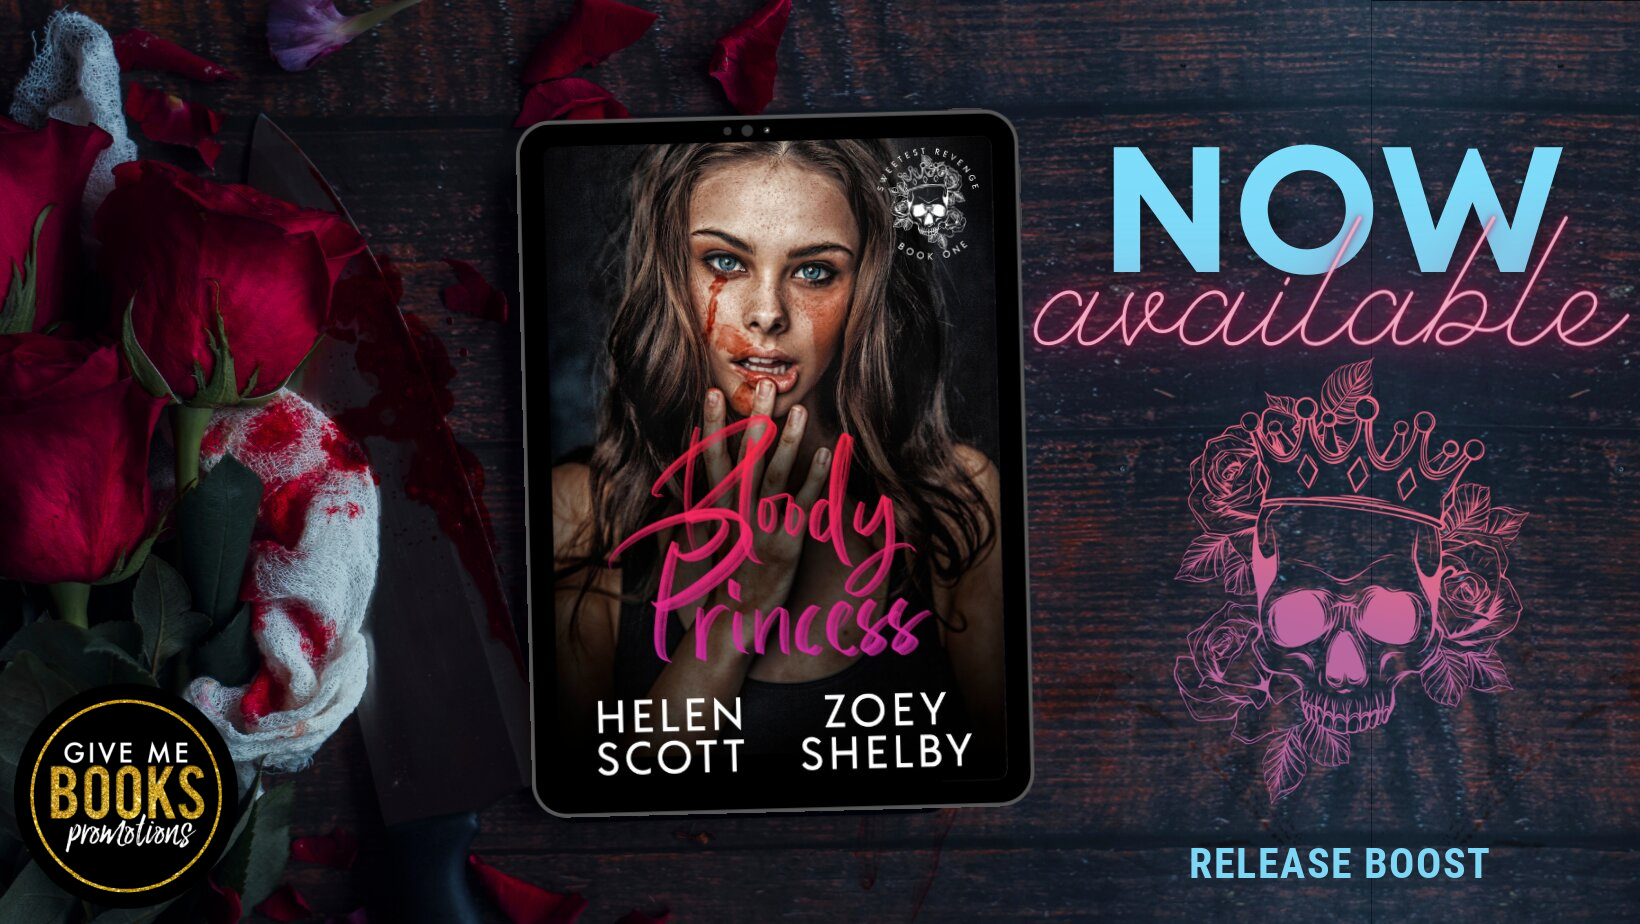 RELEASE BOOST - Bloody Princess by Helen Scott & Zoey Shelby